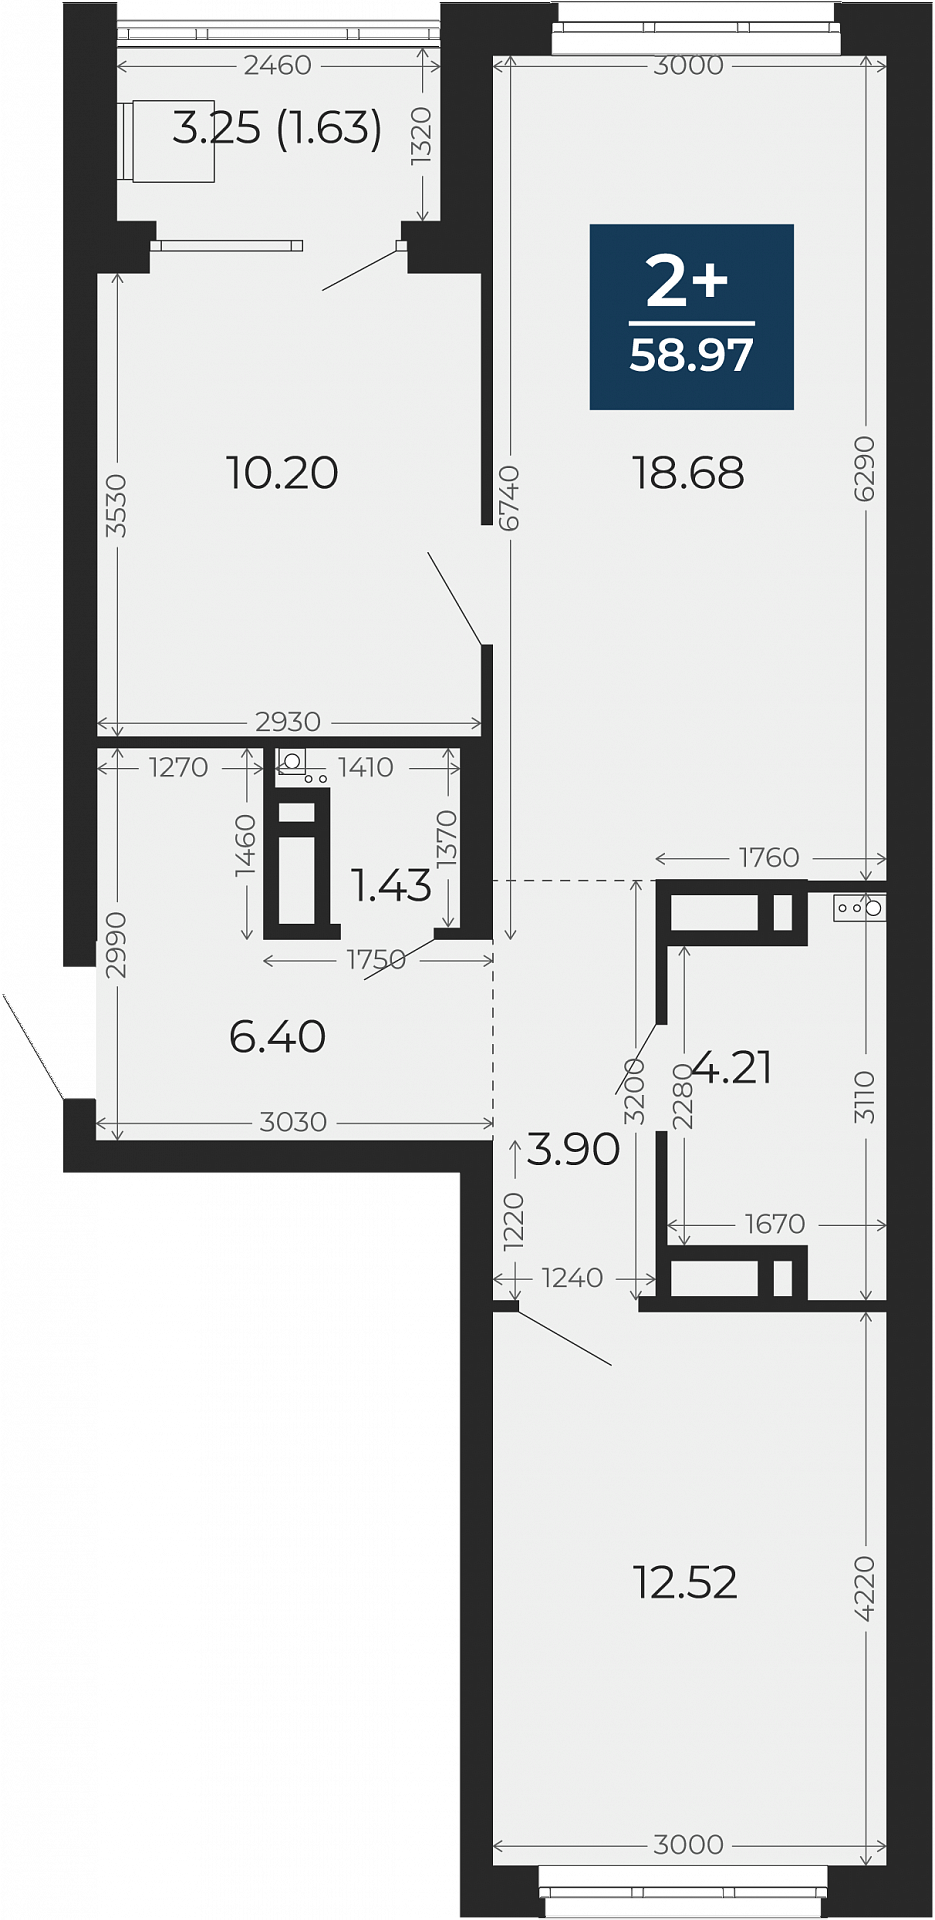 Квартира № 146, 2-комнатная, 58.97 кв. м, 16 этаж